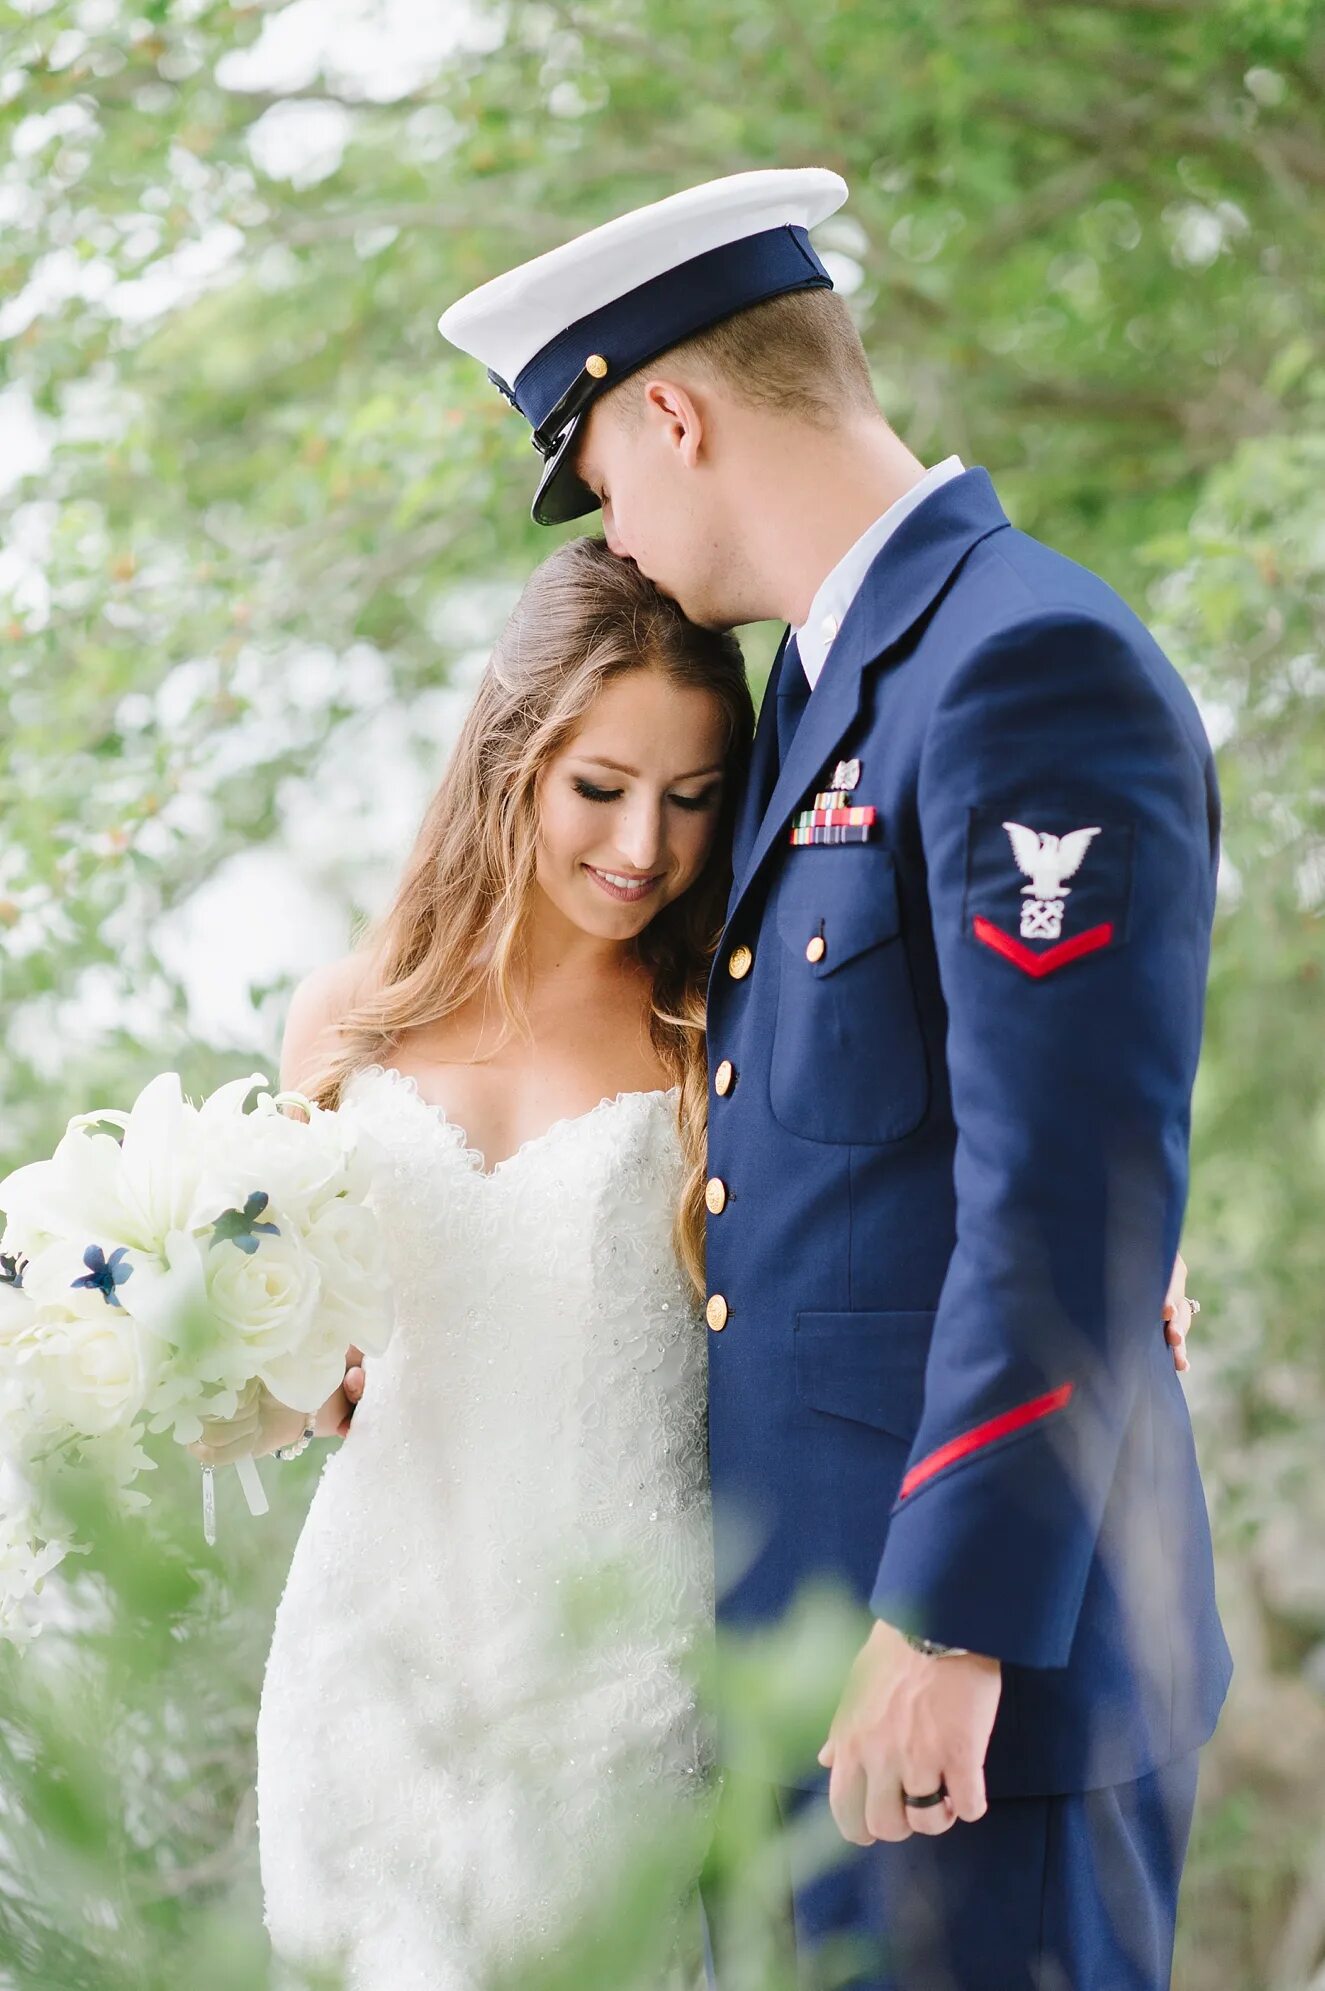 Свадьба в военном стиле. Свадебная фотосессия в военной форме. Жених в военной форме. Свадьба офицера. Жена военного 1